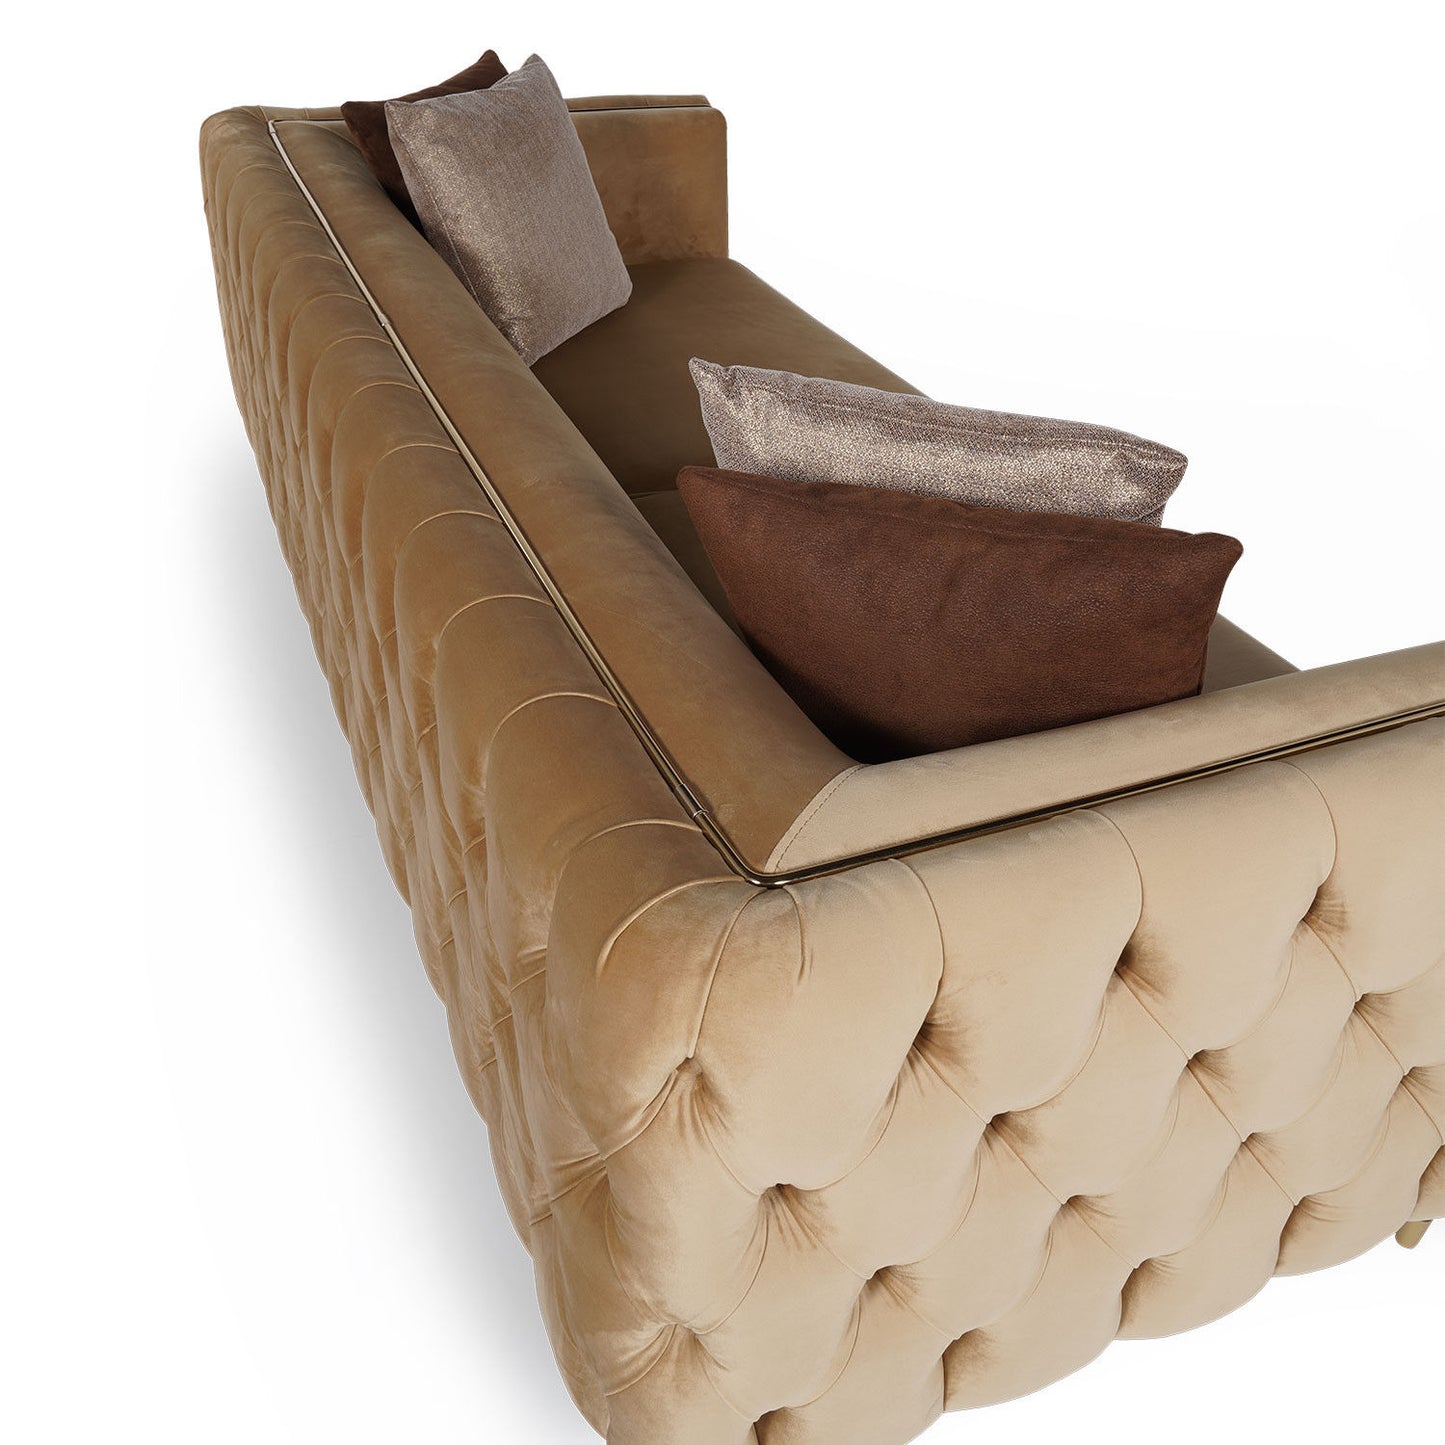 Olympus - 4-sæders sofa